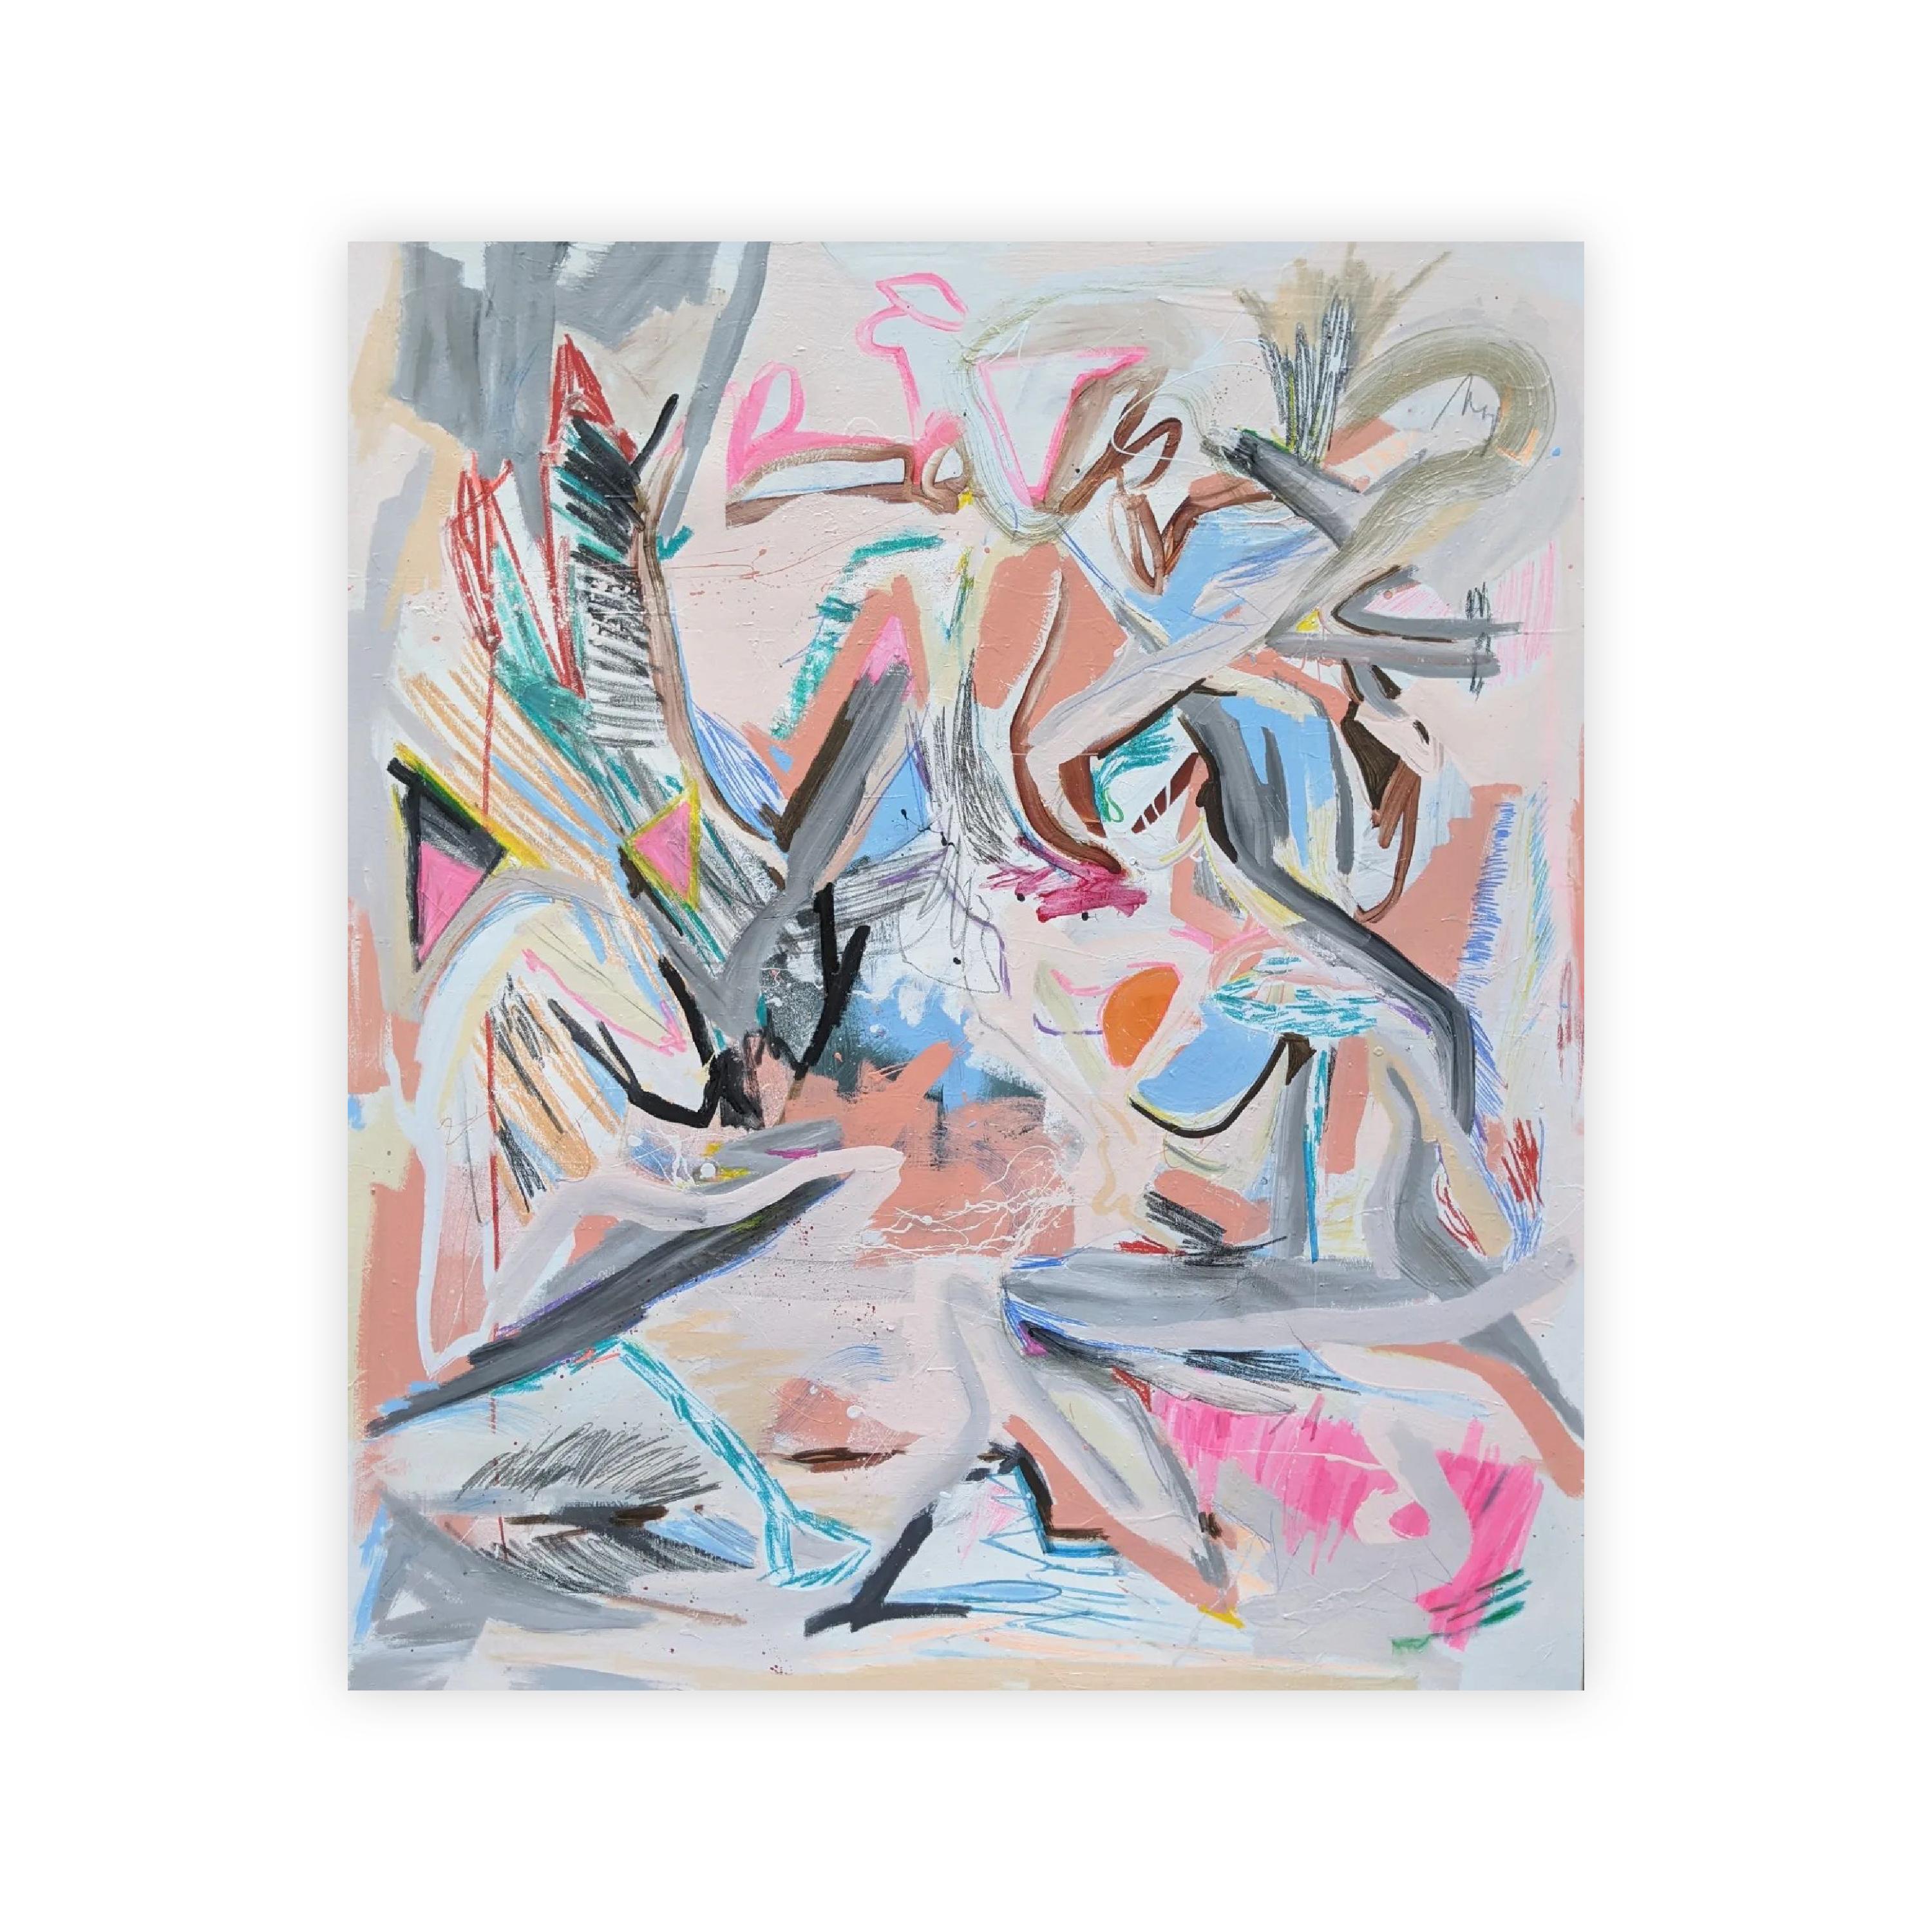 Peinture abstraite de Joseph Conrad-Ferm. La composition dynamique comprend des touches sourdes de gris et de rose ainsi que des rayures et des gribouillages vibrants.

Toutes les ventes sont finales.  Veuillez nous contacter pour des options de